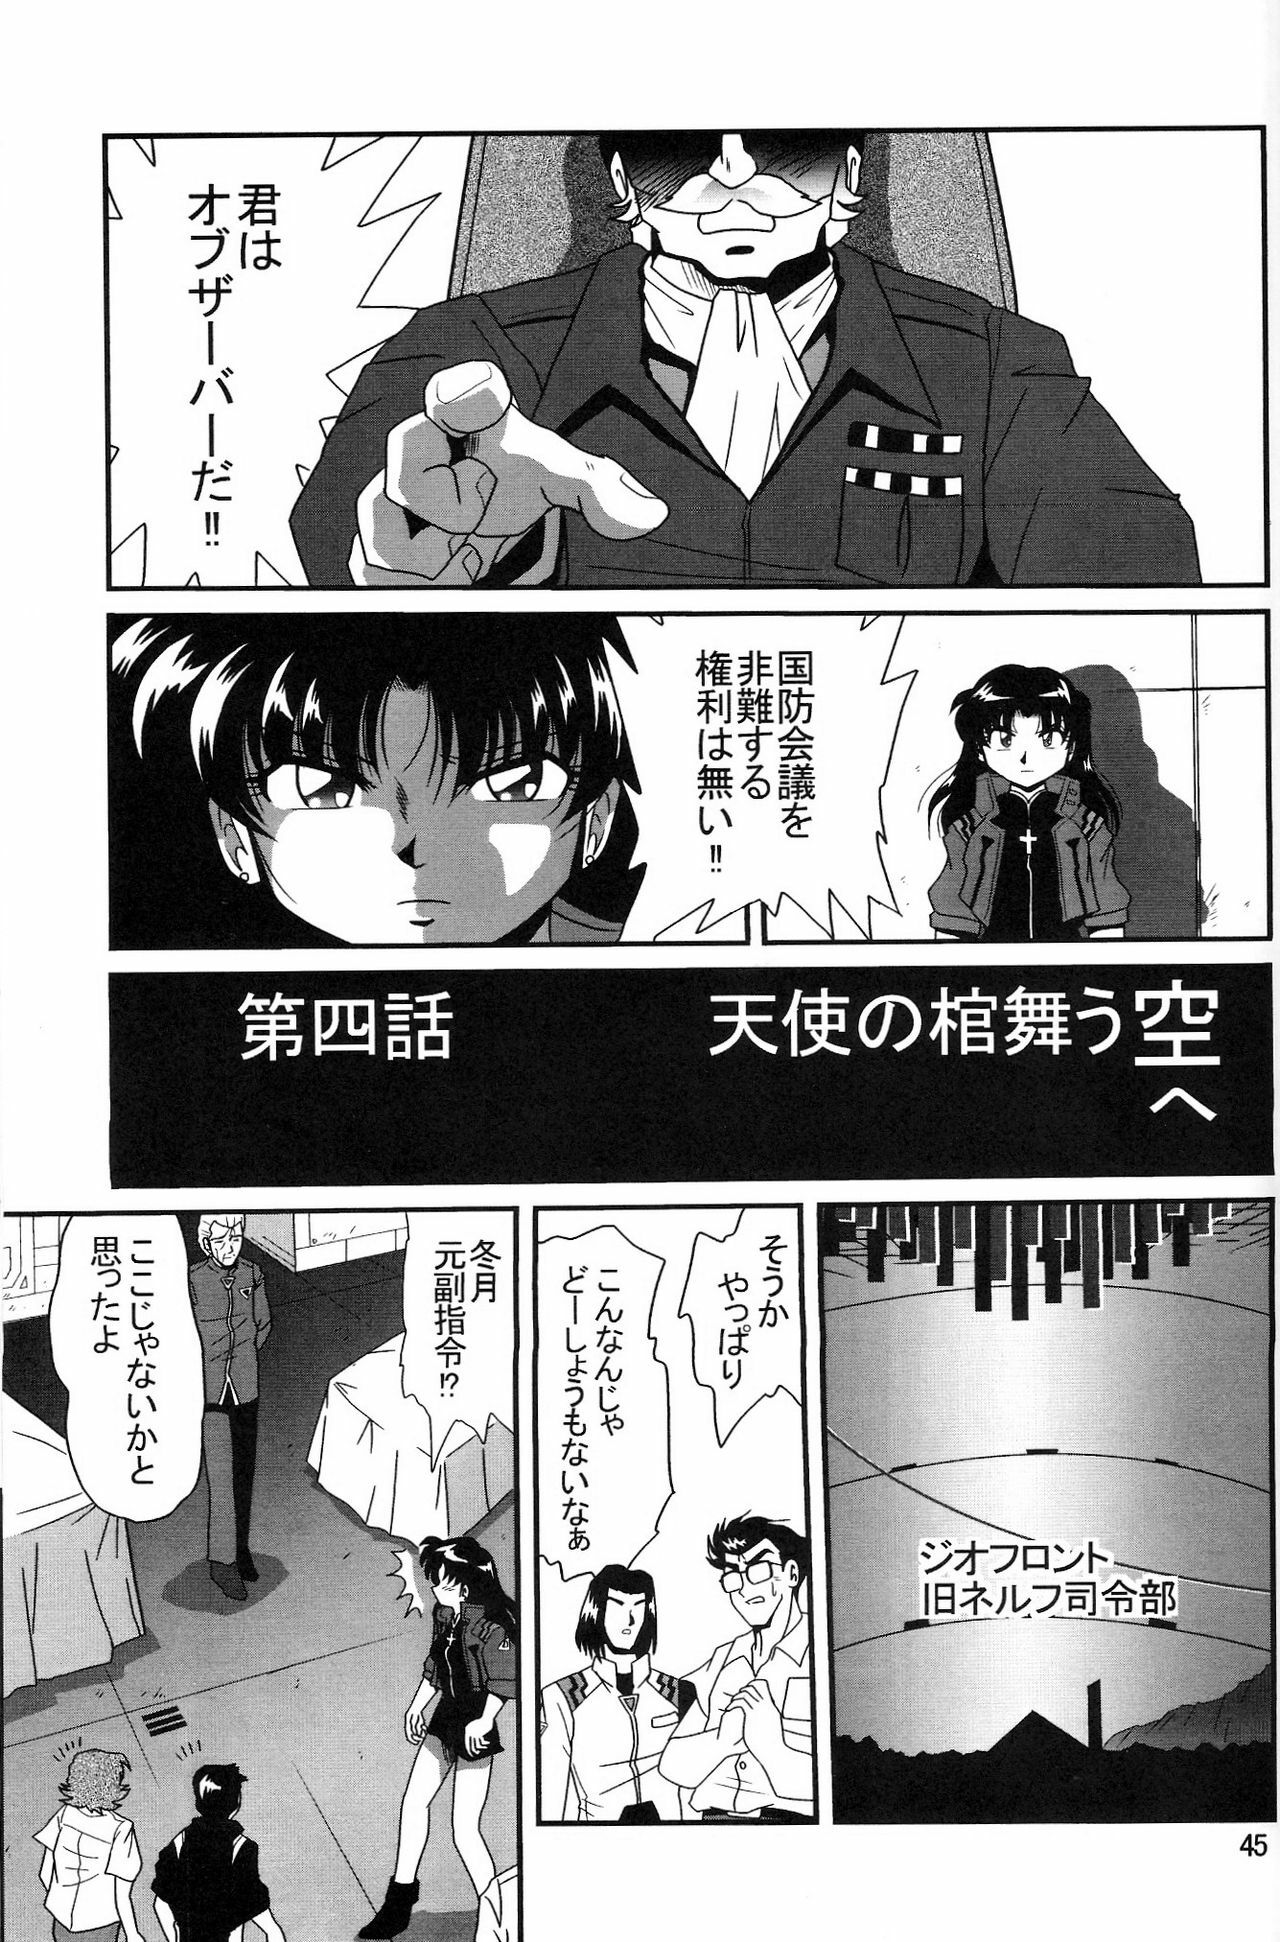 (COMIC1) [Thirty Saver Street 2D Shooting (Maki Hideto, Sawara Kazumitsu, Yonige-ya No Kyou)] Second Uchuu Keikaku 2 (Neon Genesis Evangelion) page 45 full